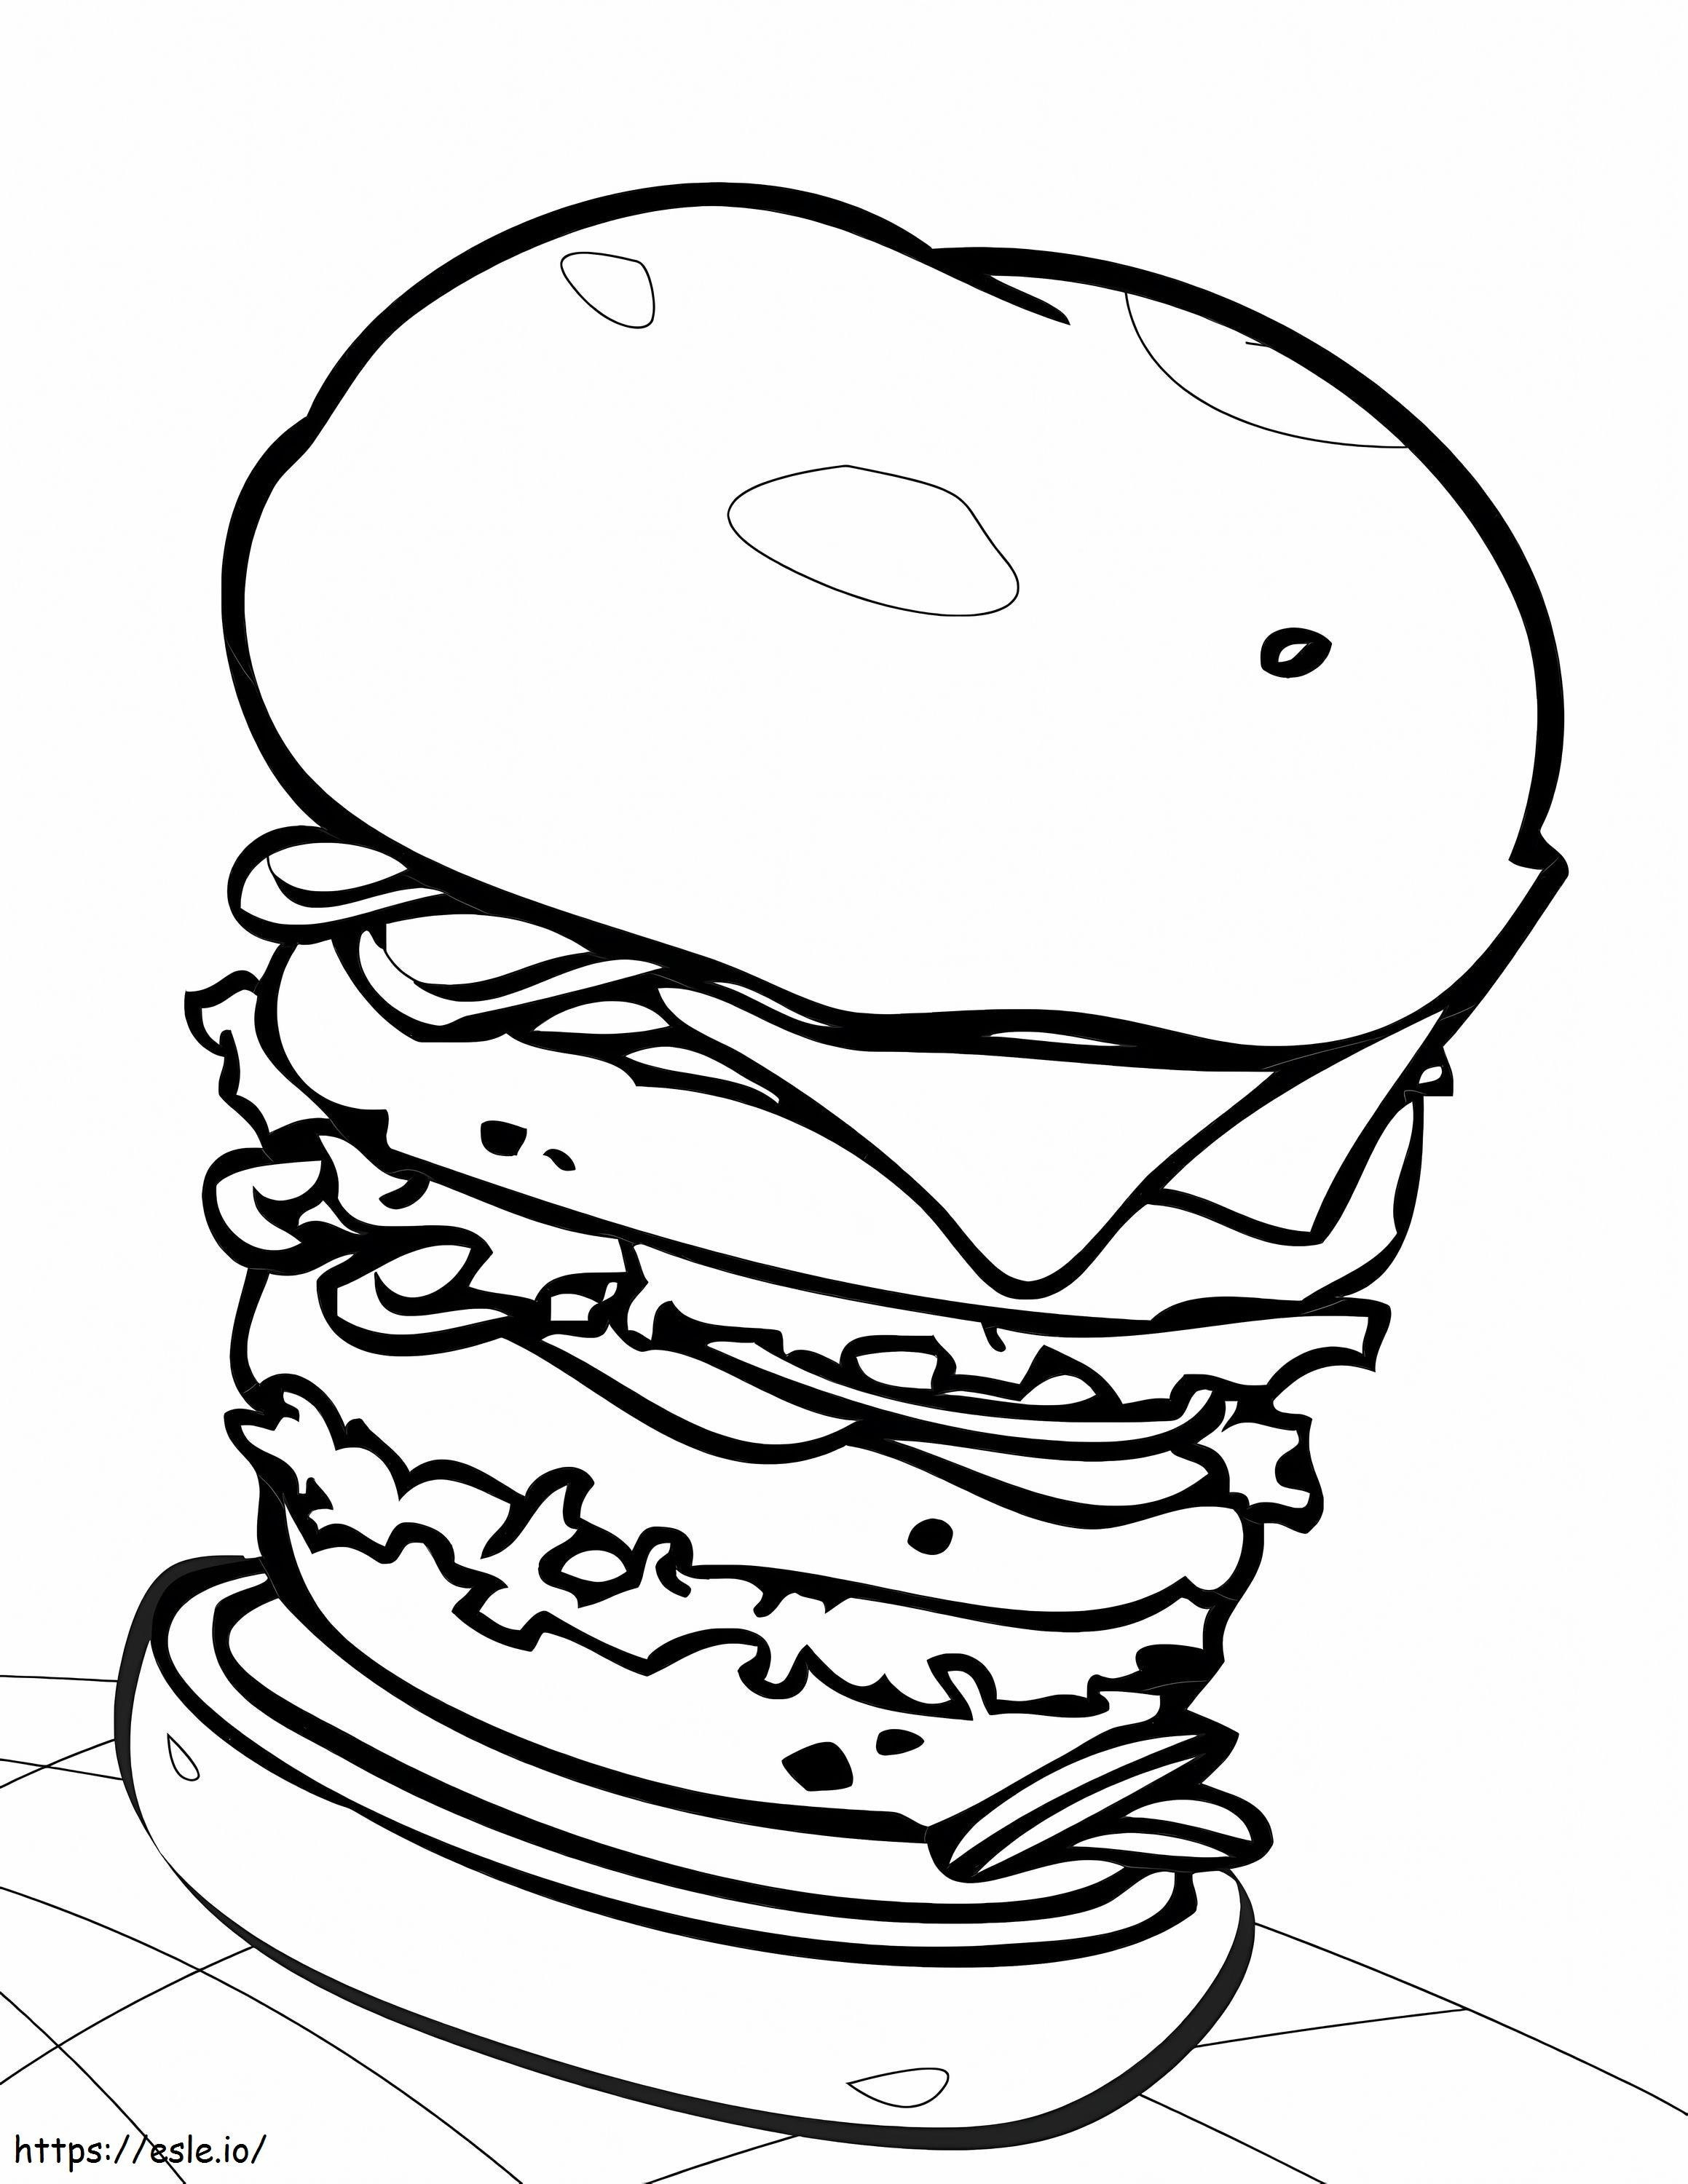 Big Hamburger coloring page